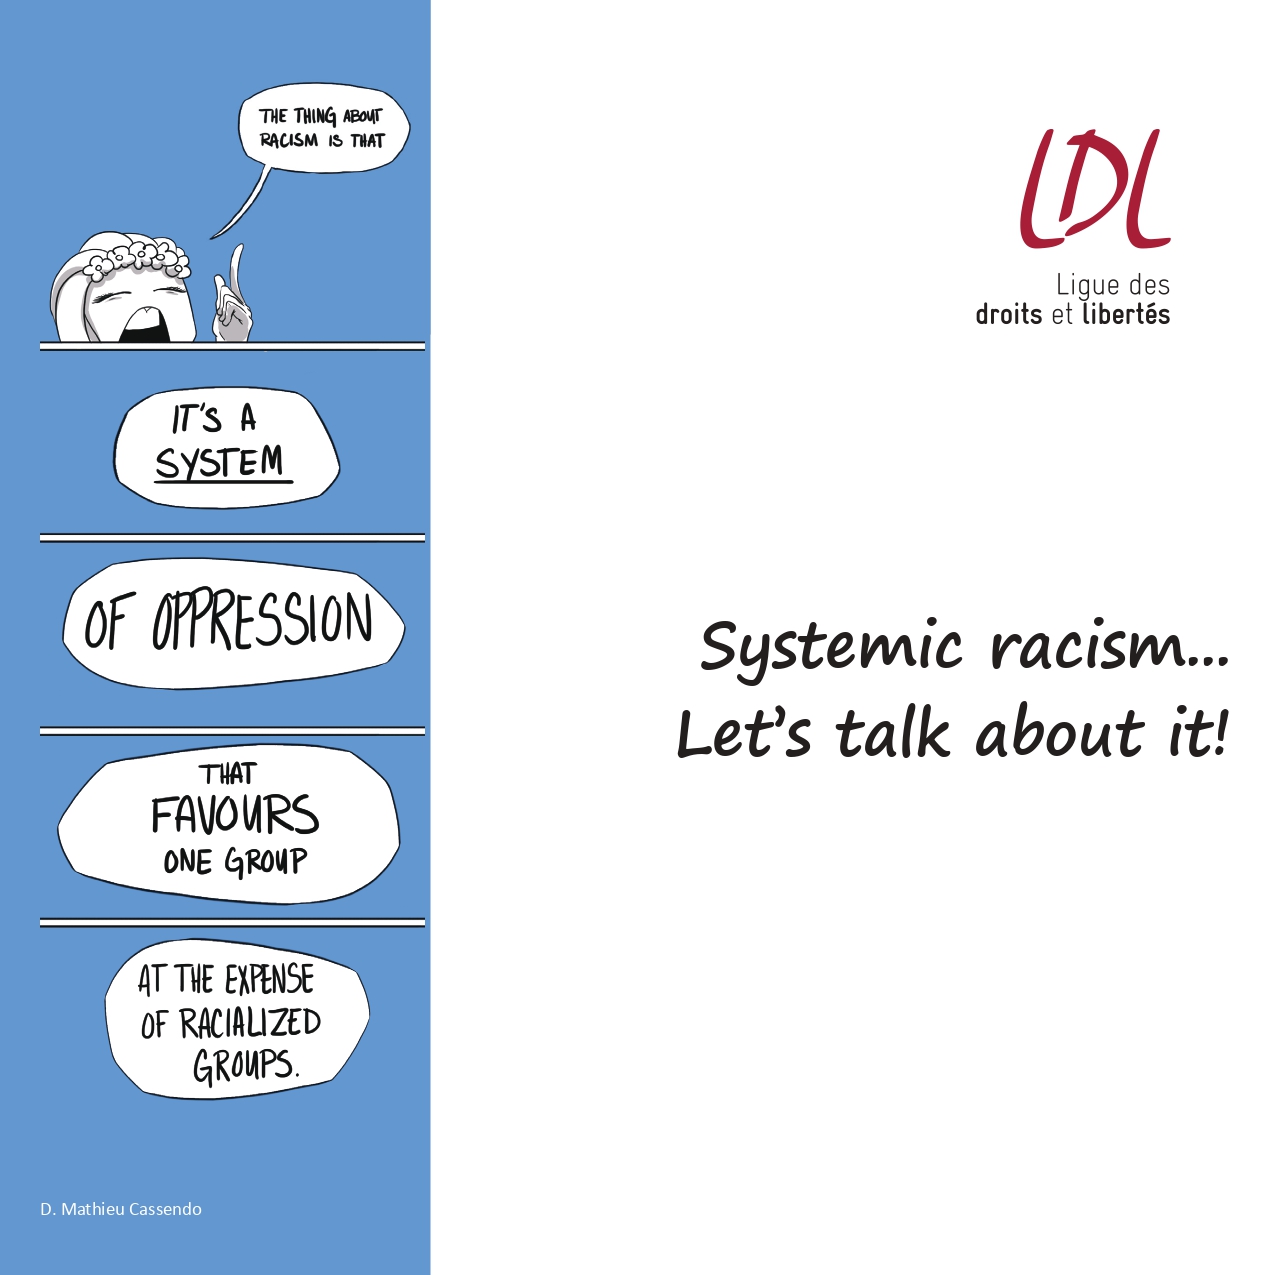 image de la brochure Systemic racism